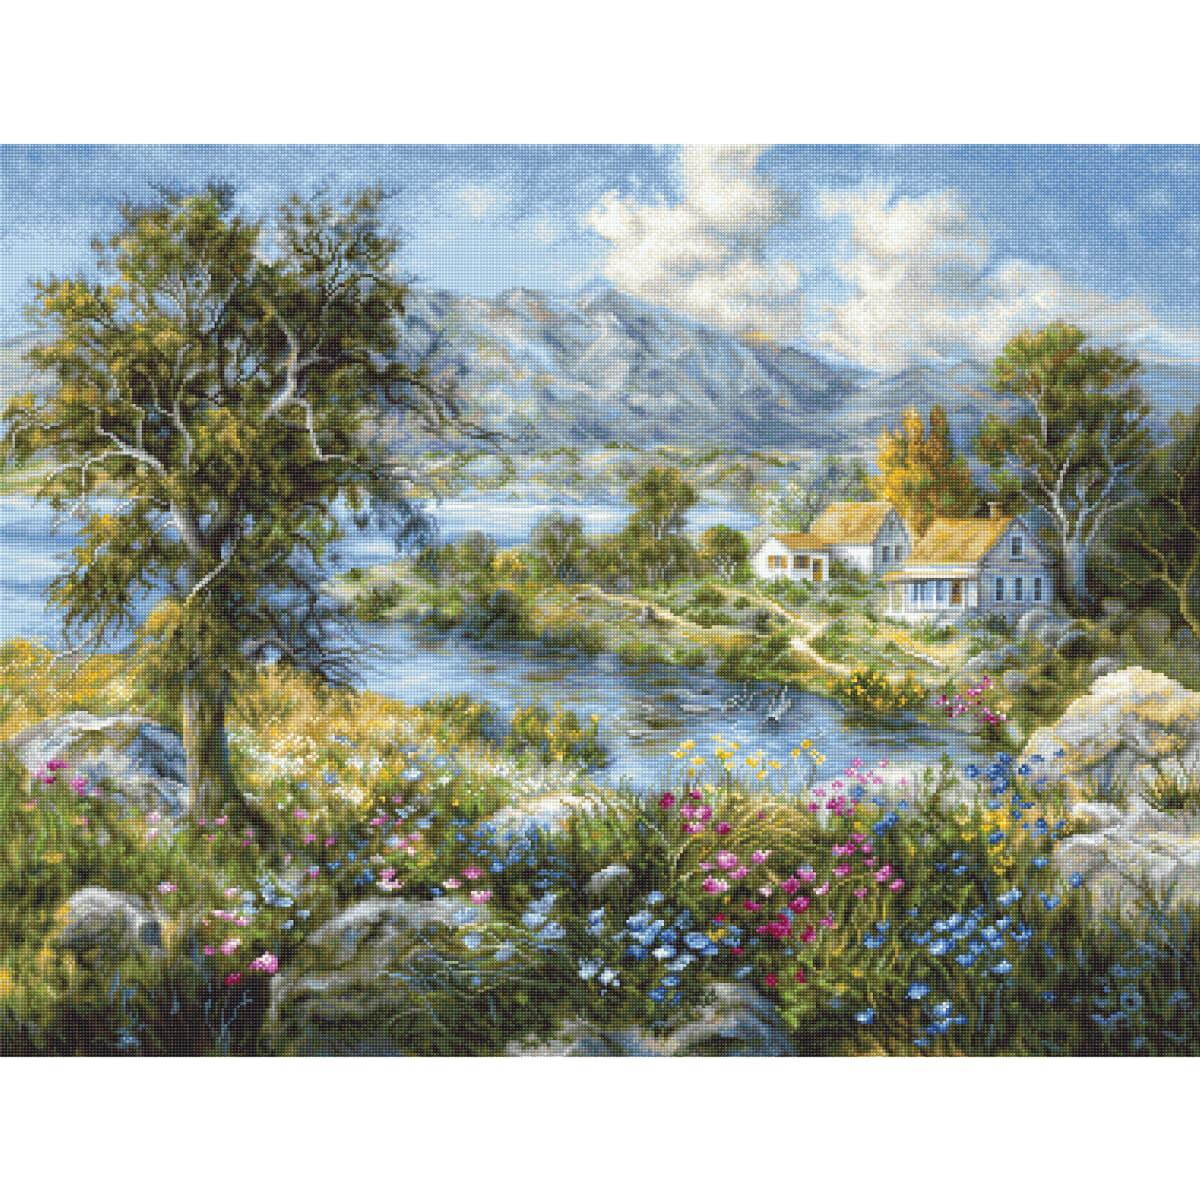 Un vivace dipinto di paesaggio mostra un fiume calmo...